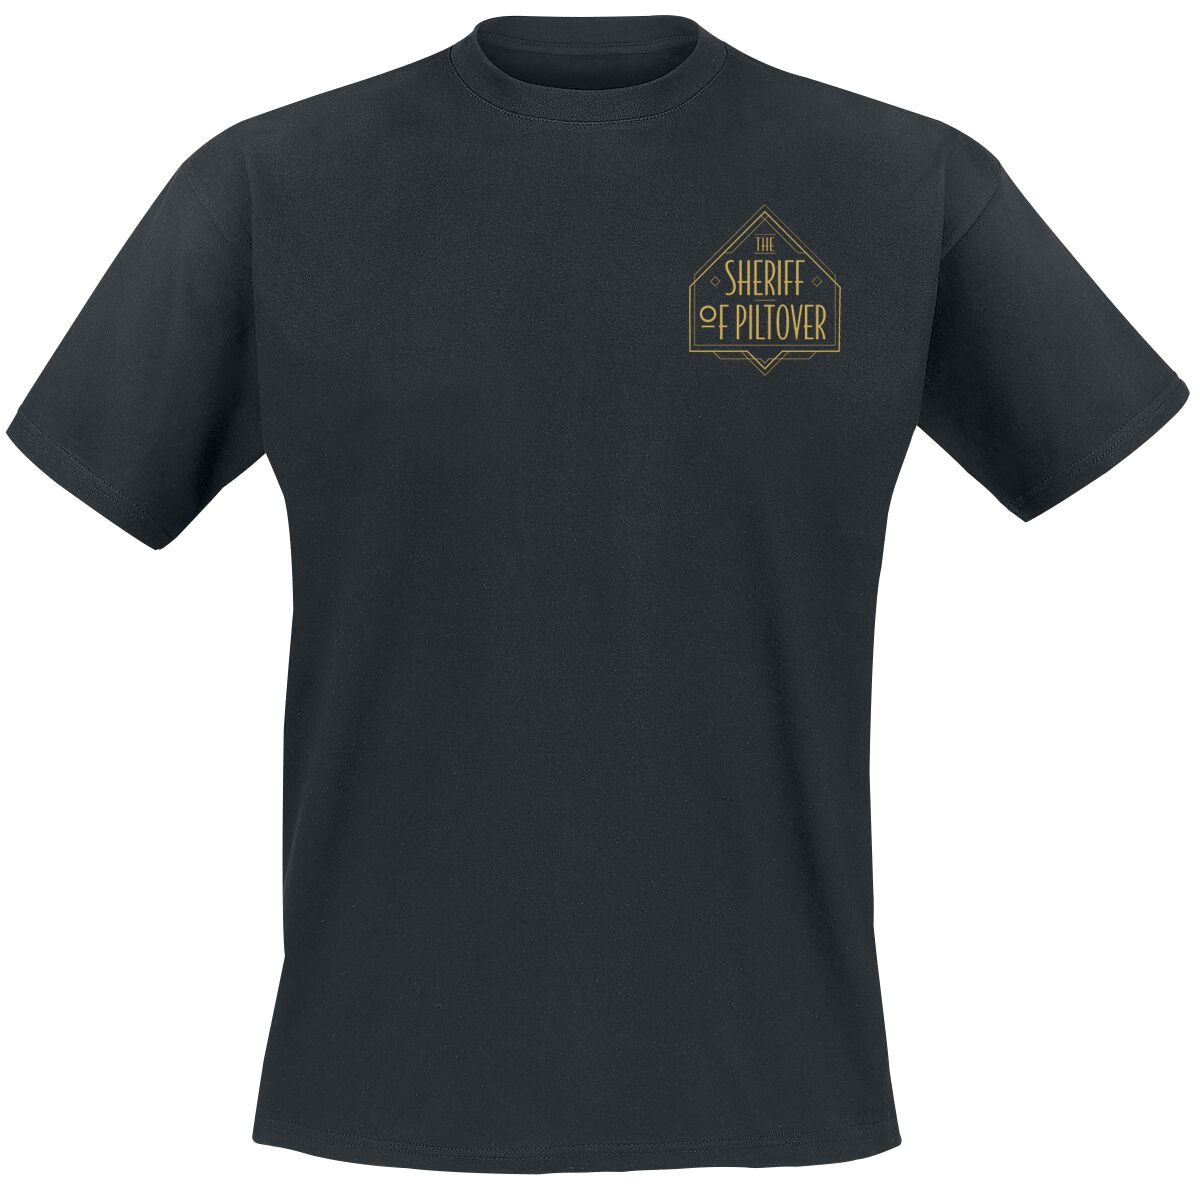 Arcane: League Of Legends - Gaming T-Shirt - Caitlyn - Piltover Sheriff - S bis L - für Männer - Größe S - schwarz  - EMP exklusives Merchandise!